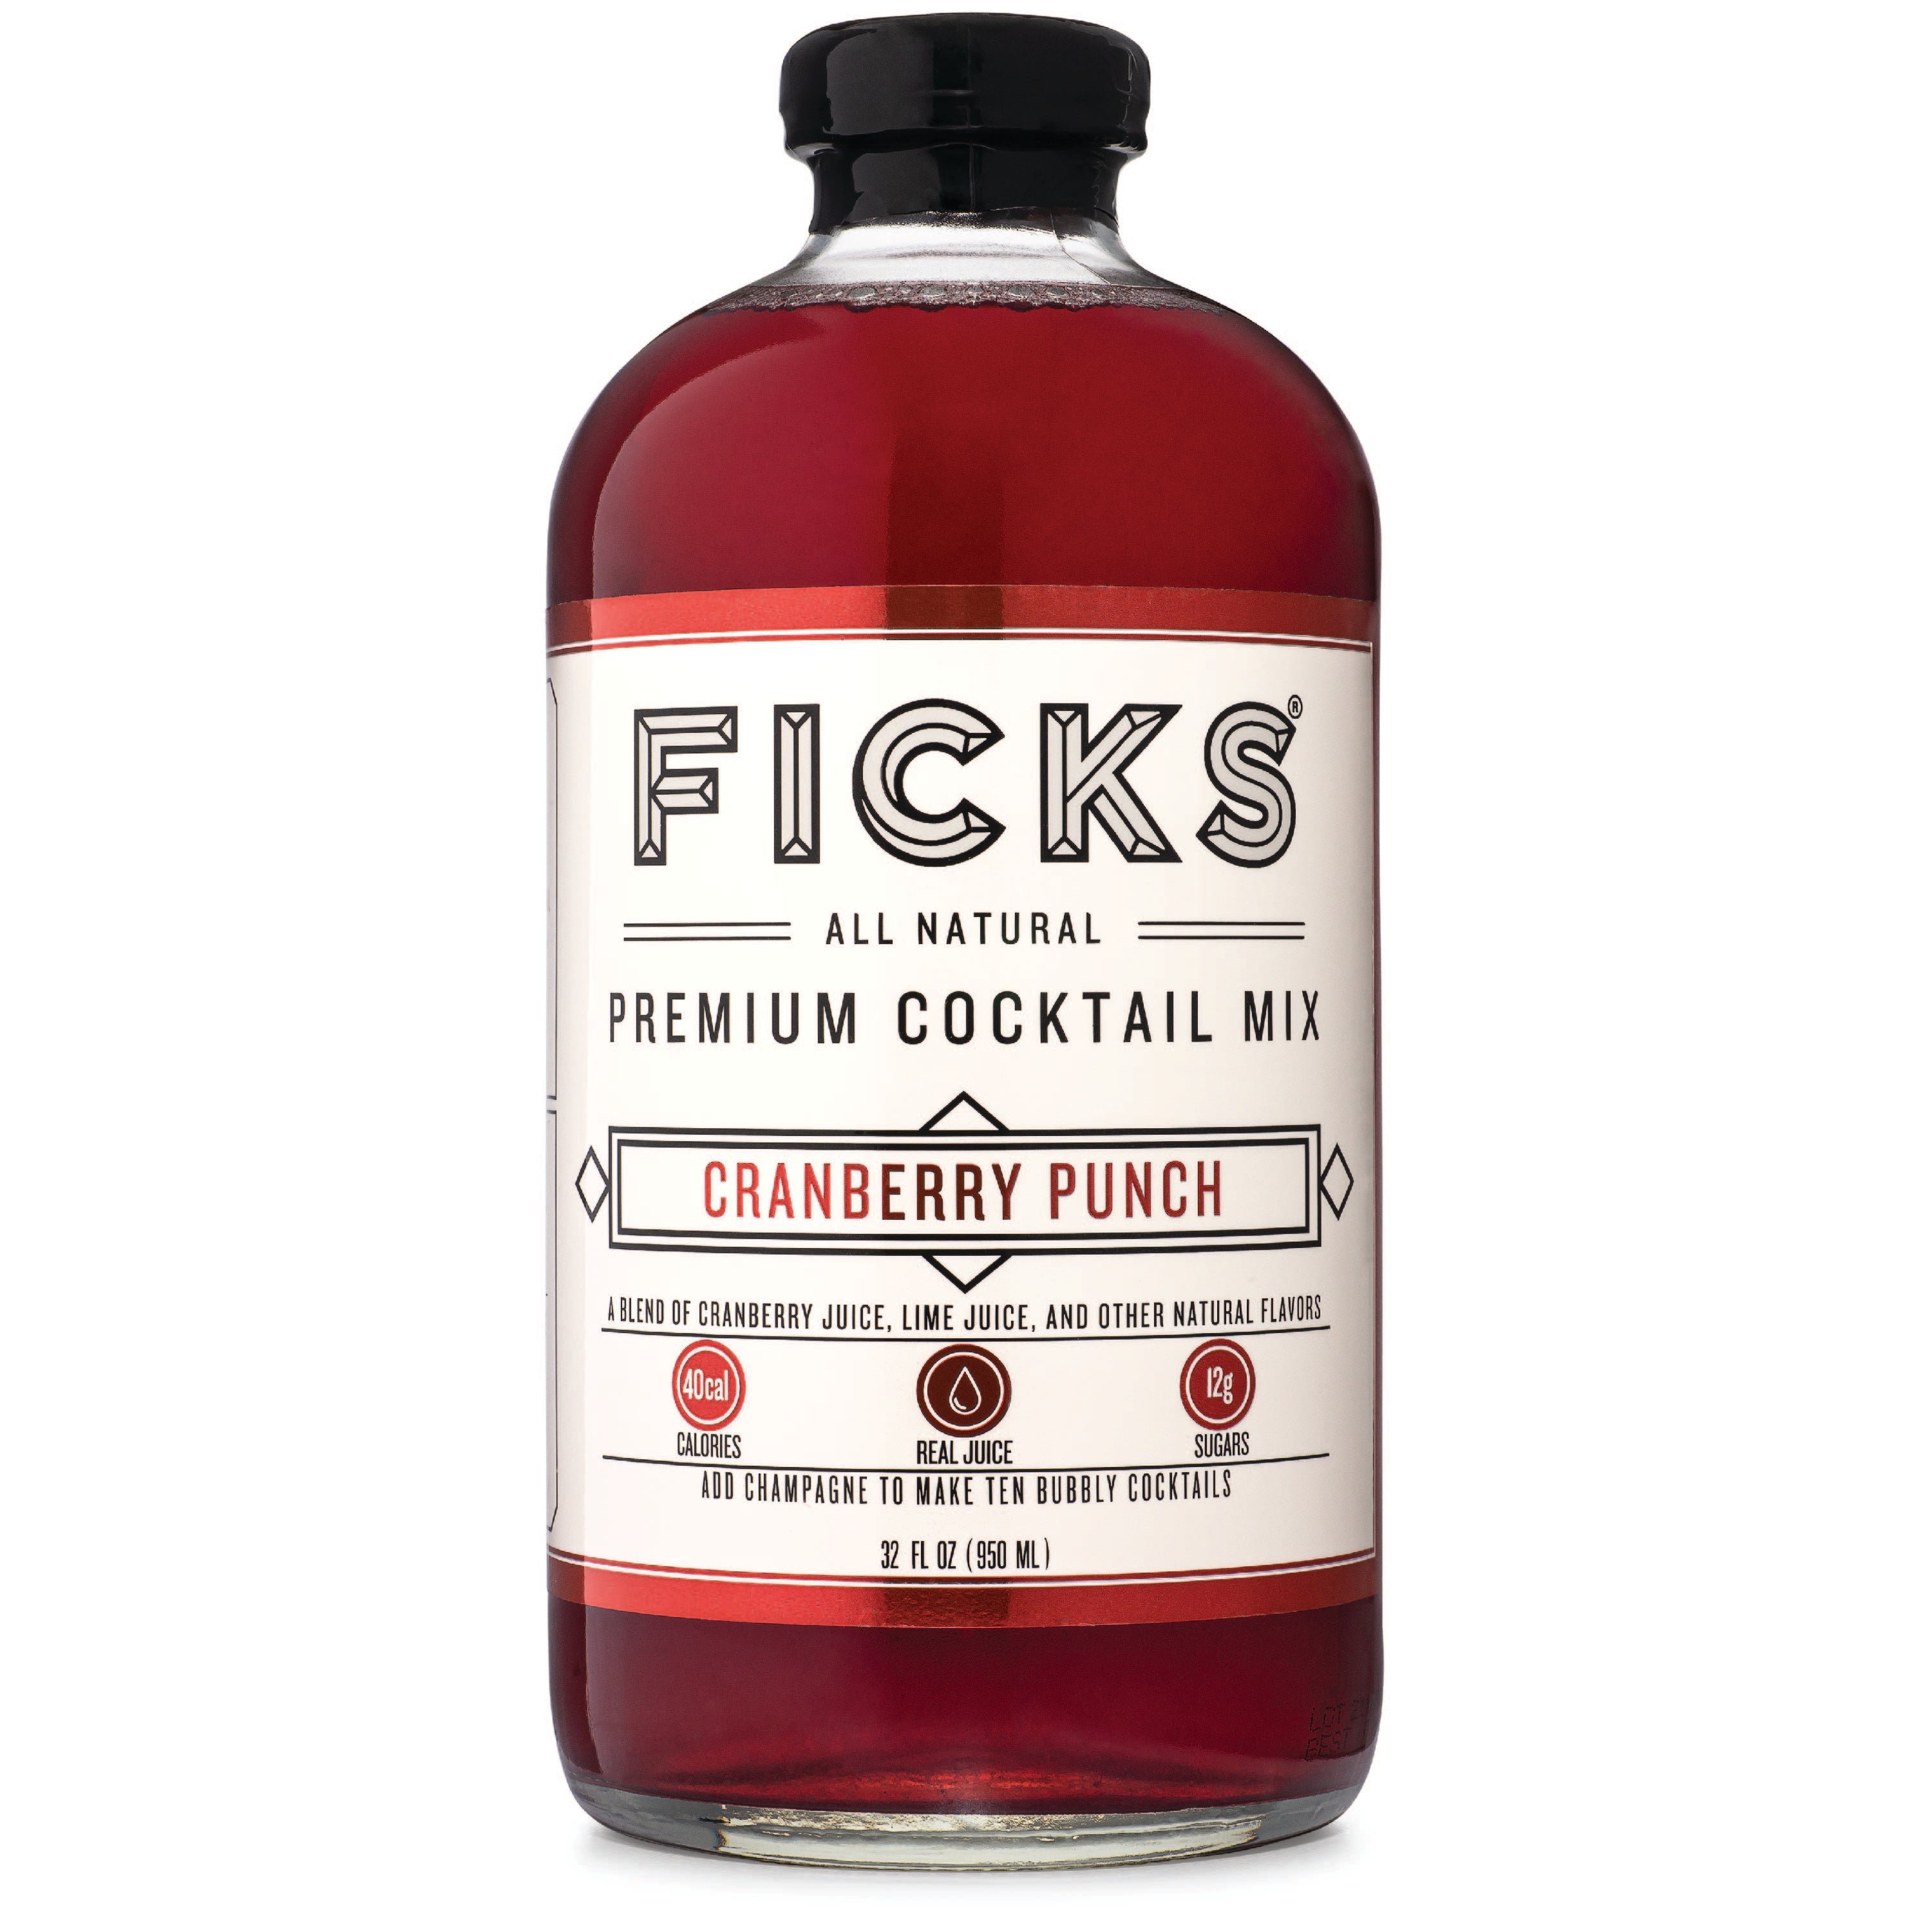 FICKS Premium Cranberry Punch Cocktail Mix